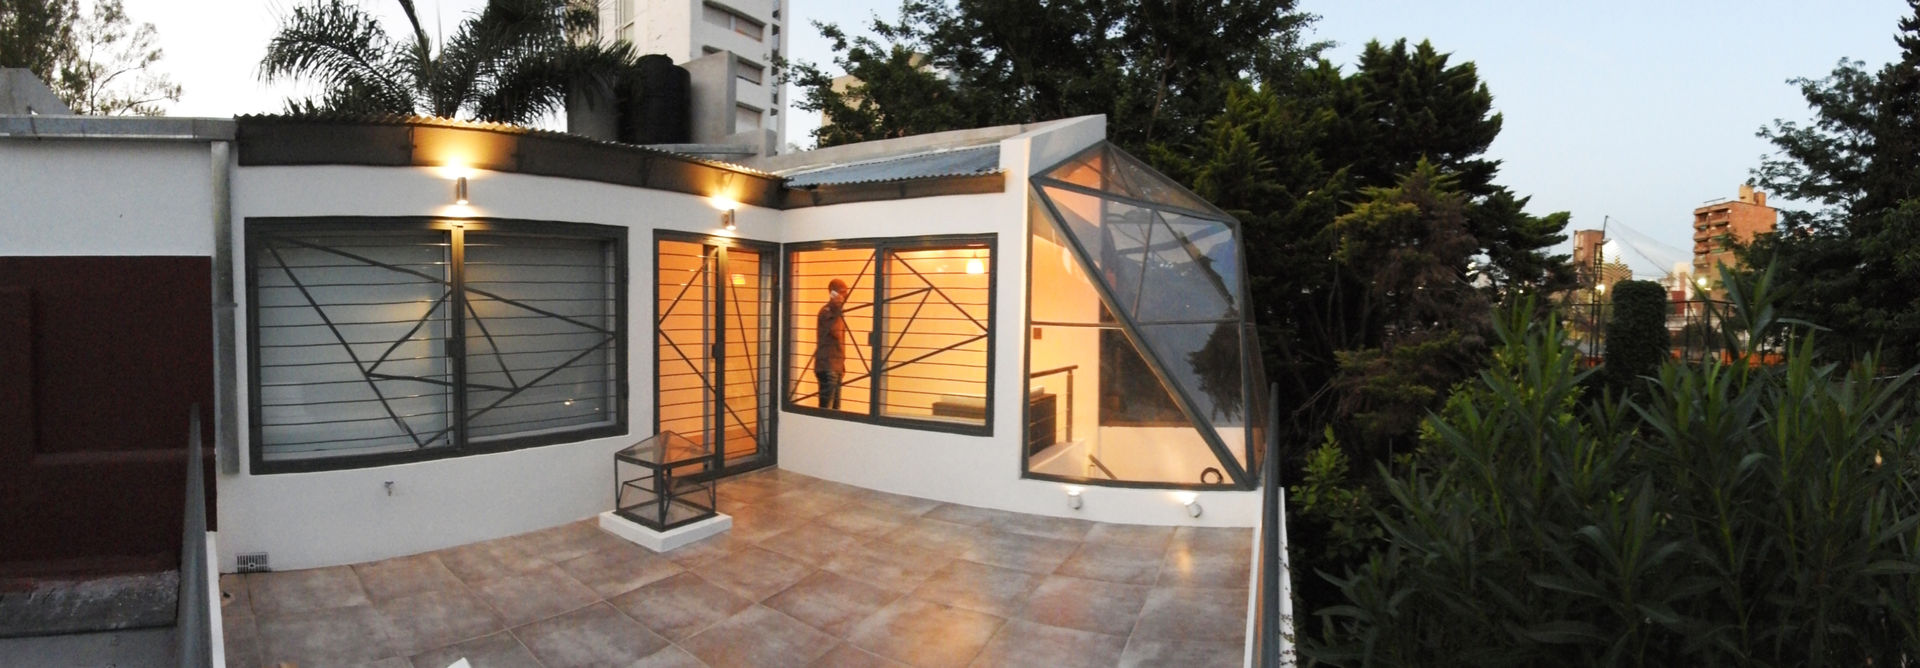 La Cúpula - 2015, Erb Santiago Erb Santiago Casas modernas: Ideas, imágenes y decoración